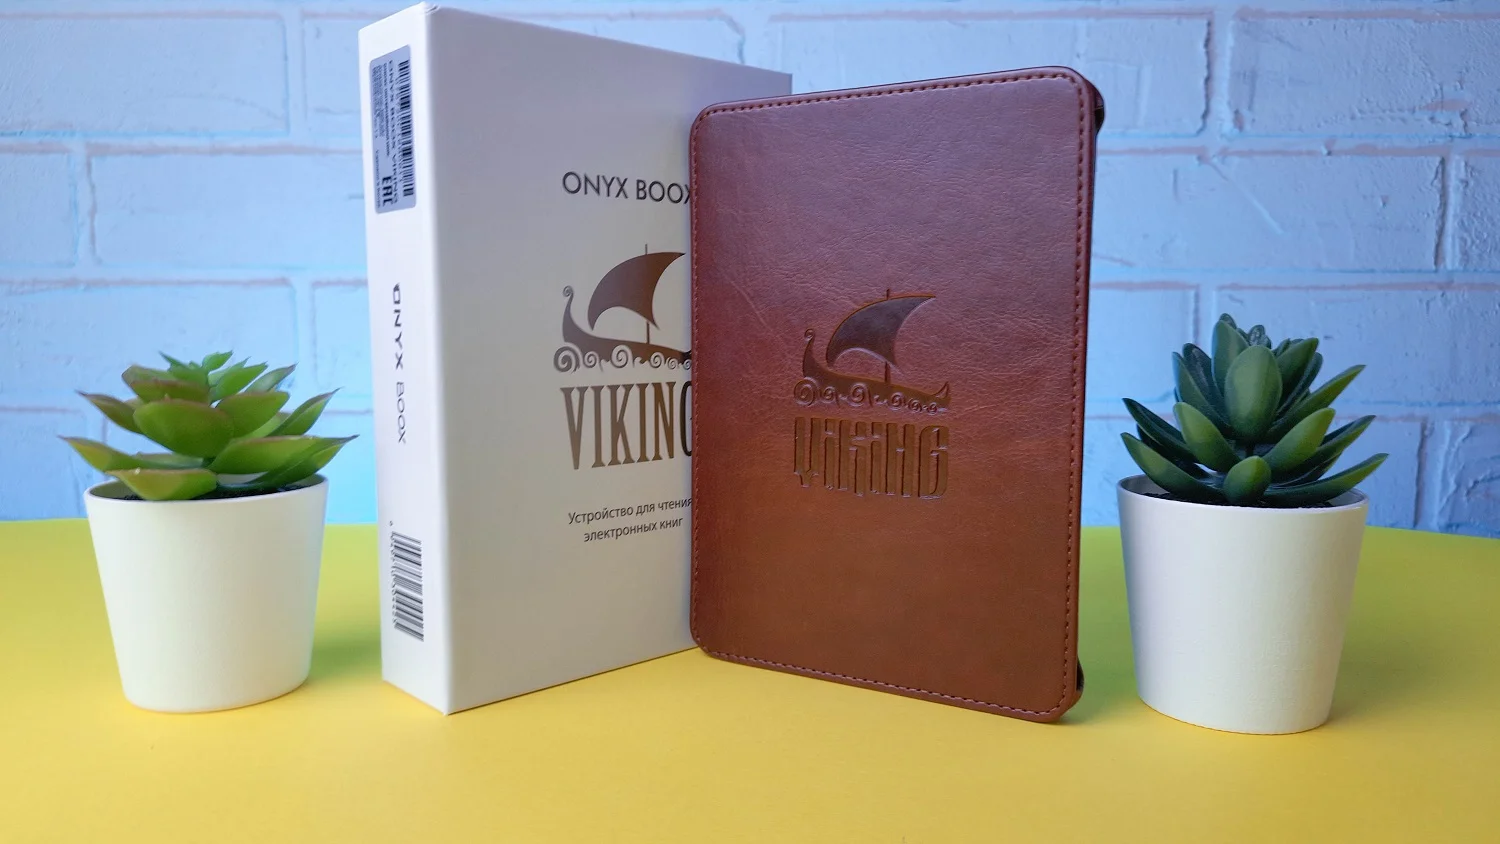 Обзор Onyx Boox Viking: может ли современная электронная книга заменить смартфон - фото 5